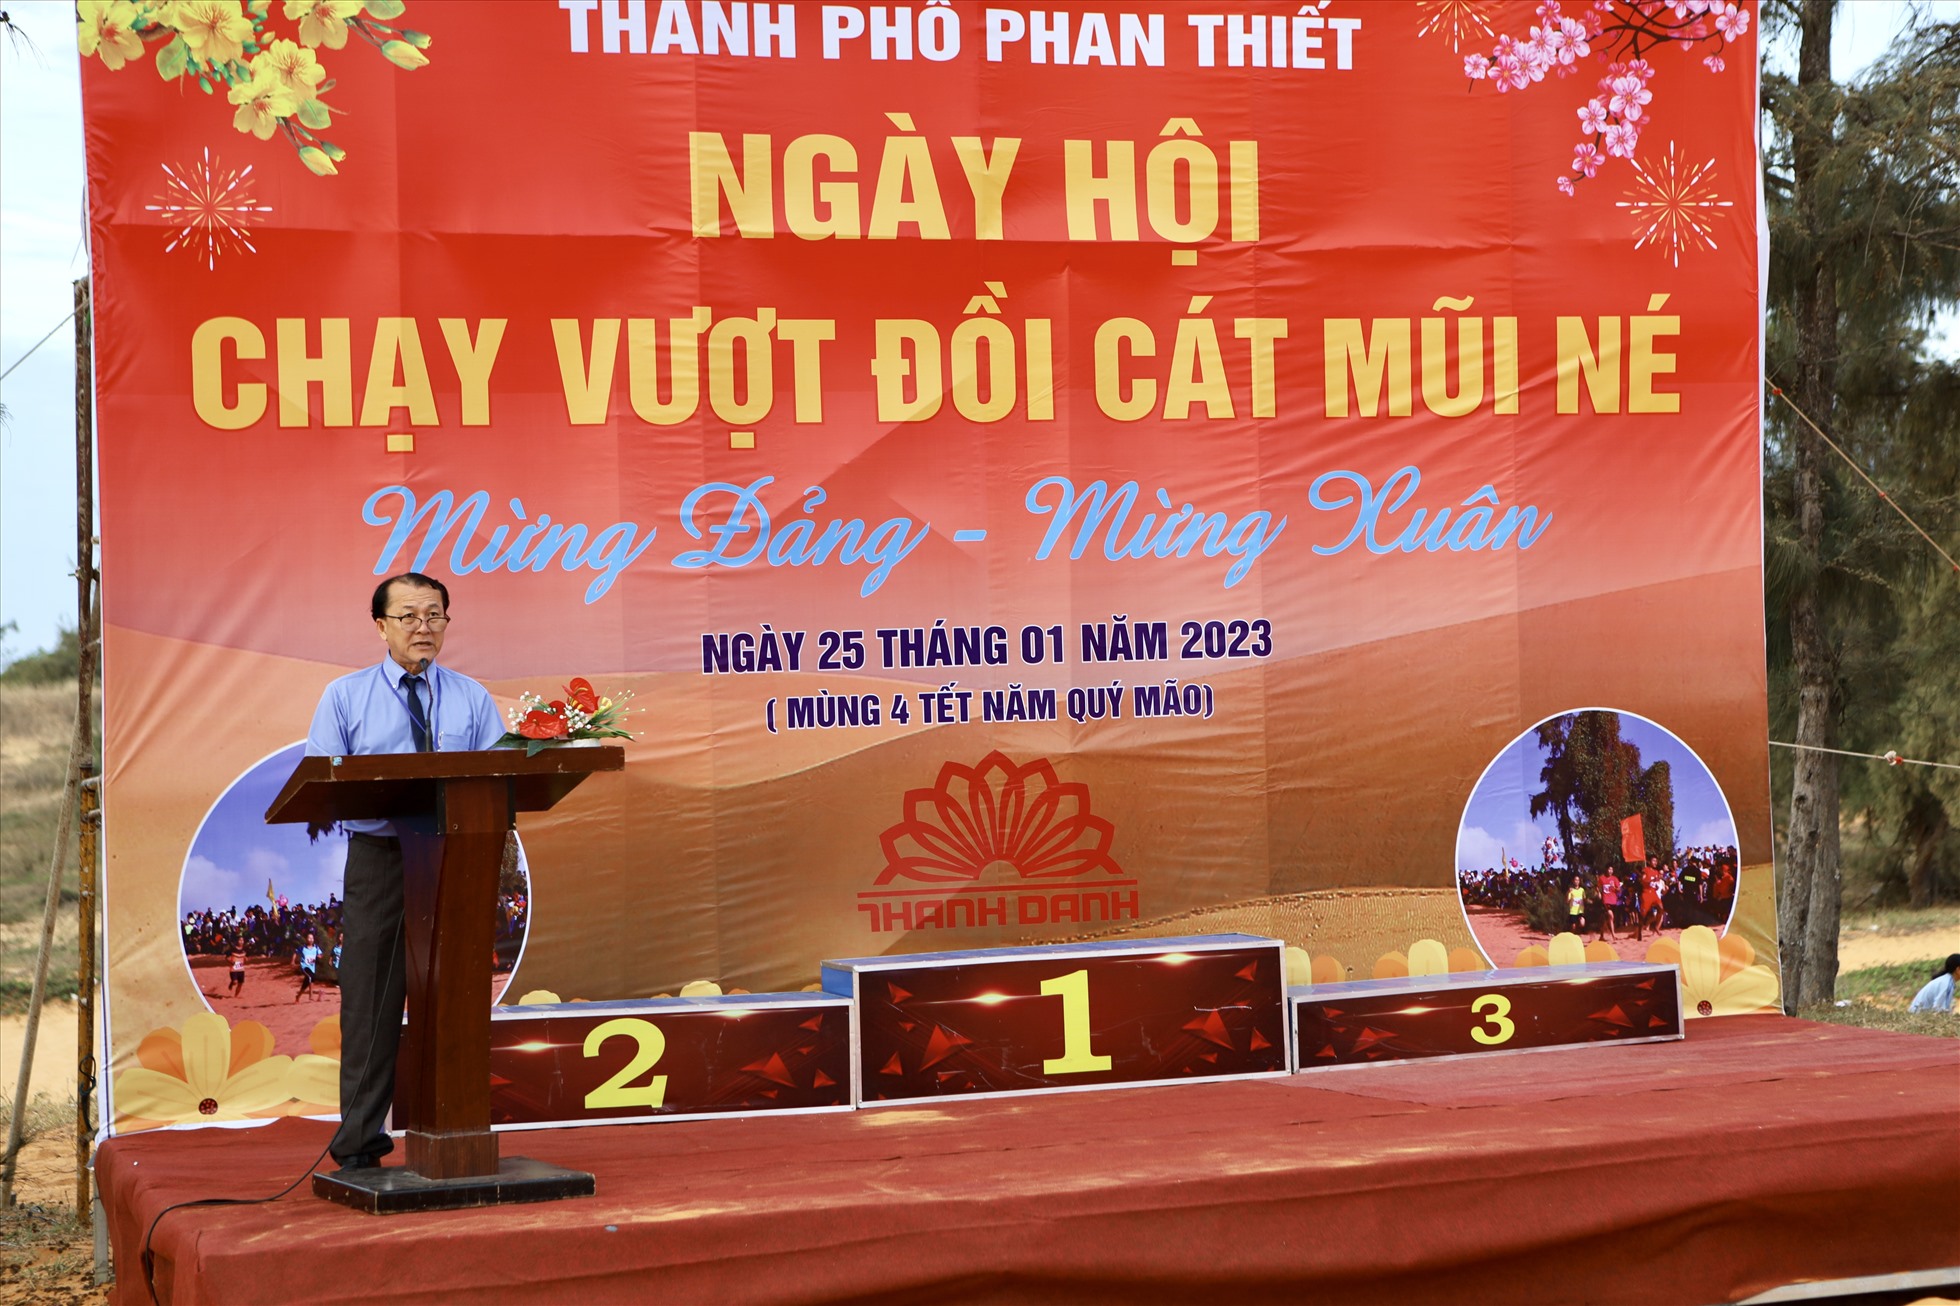 Ông Nguyễn Nam Long, Phó Chủ tịch UBND TP.Phan Thiết cho biết, tính đến nay, Giải chạy vượt đồi cát đã hơn 20 lần tổ chức. Mặc dù vậy nhưng năm nào cũng thu hút rất đông các vận động viên tham gia.